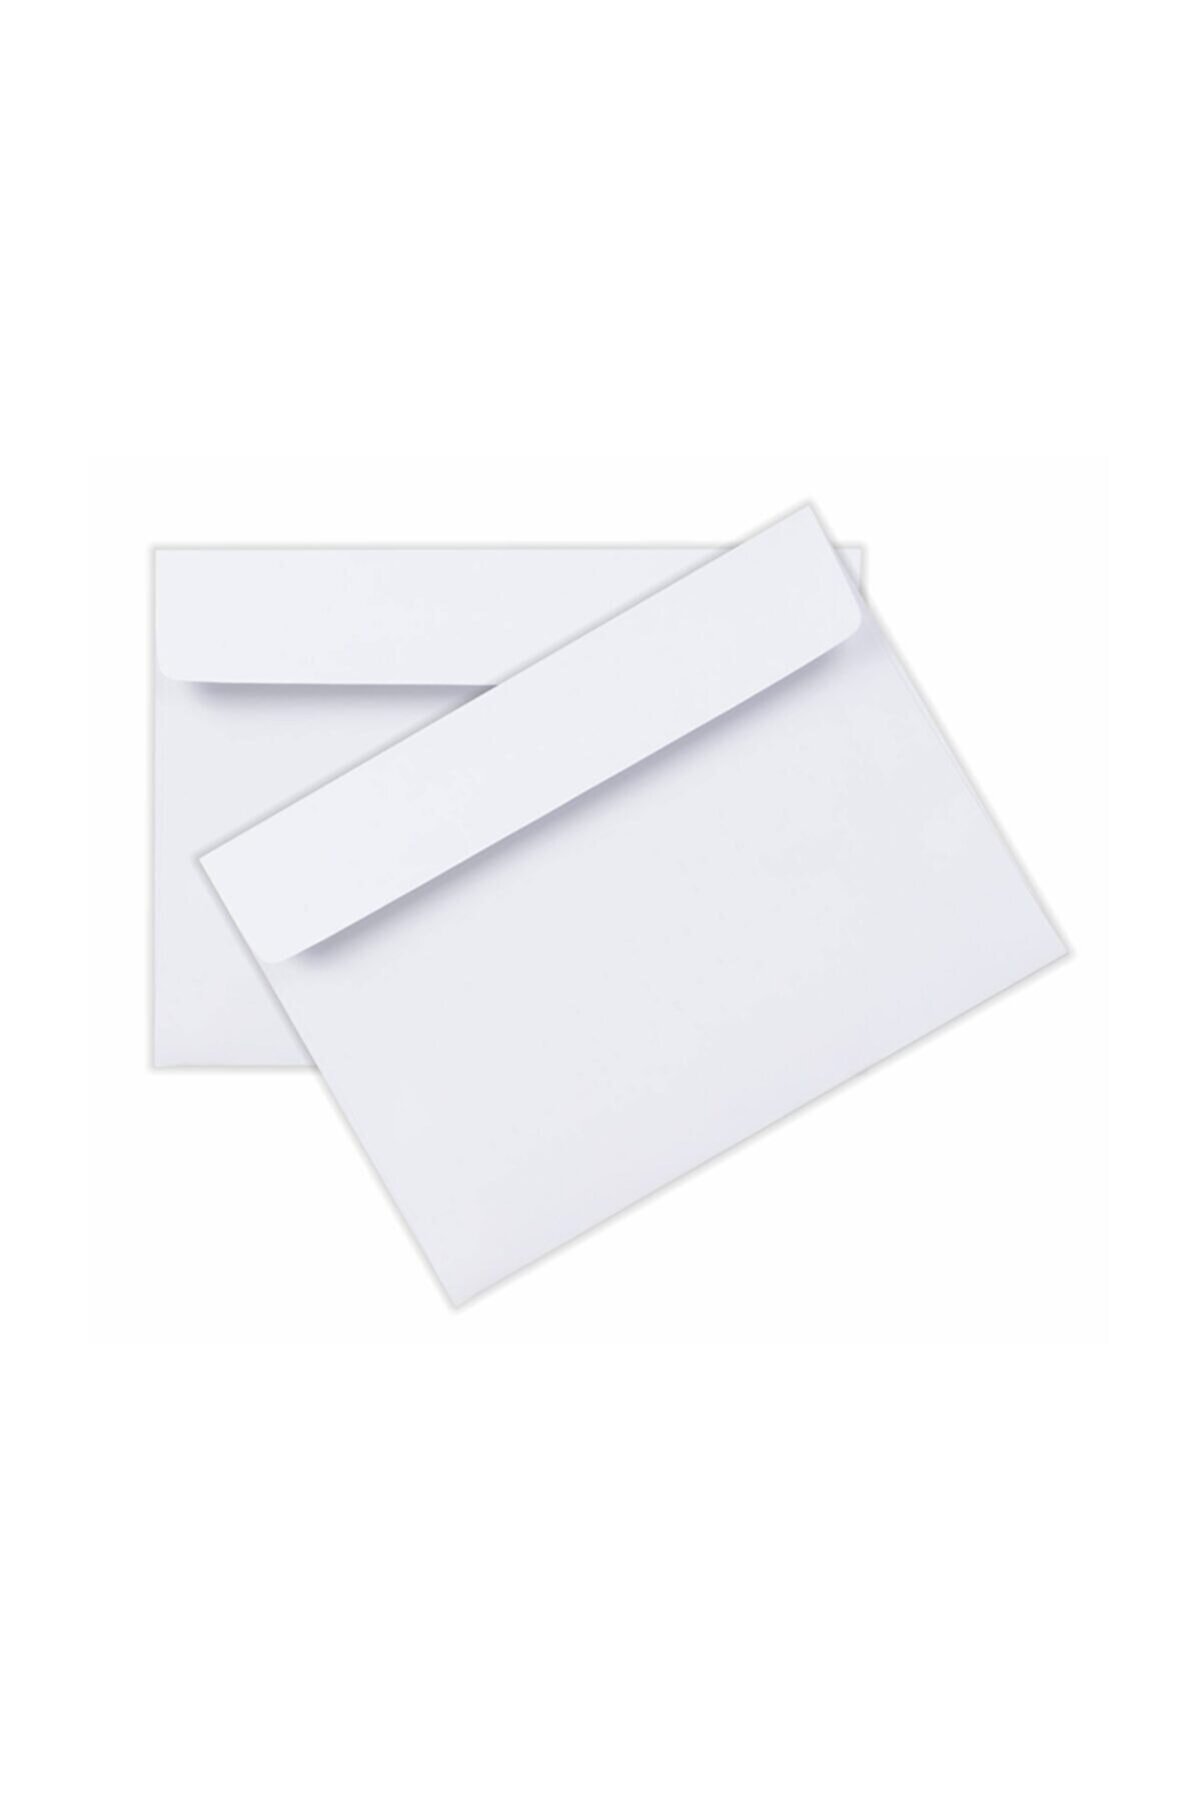 ASİL DOĞAN Mektup Zarfı Silikonlu 500 Adet 11,4x16,2 cm 90 gr